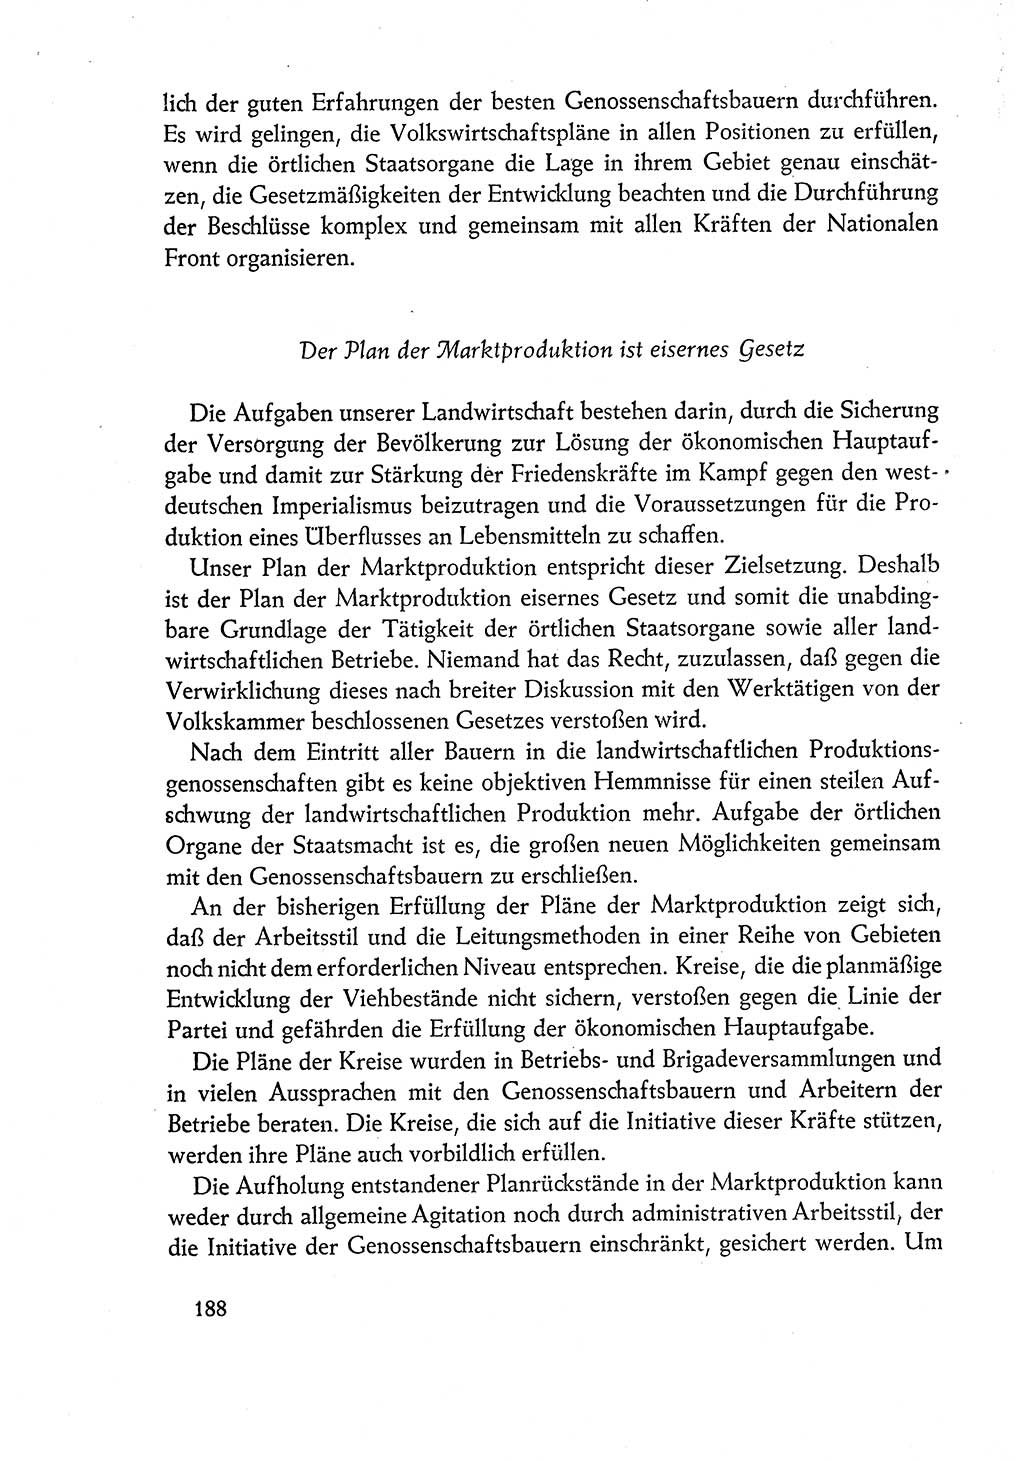 Dokumente der Sozialistischen Einheitspartei Deutschlands (SED) [Deutsche Demokratische Republik (DDR)] 1960-1961, Seite 188 (Dok. SED DDR 1960-1961, S. 188)